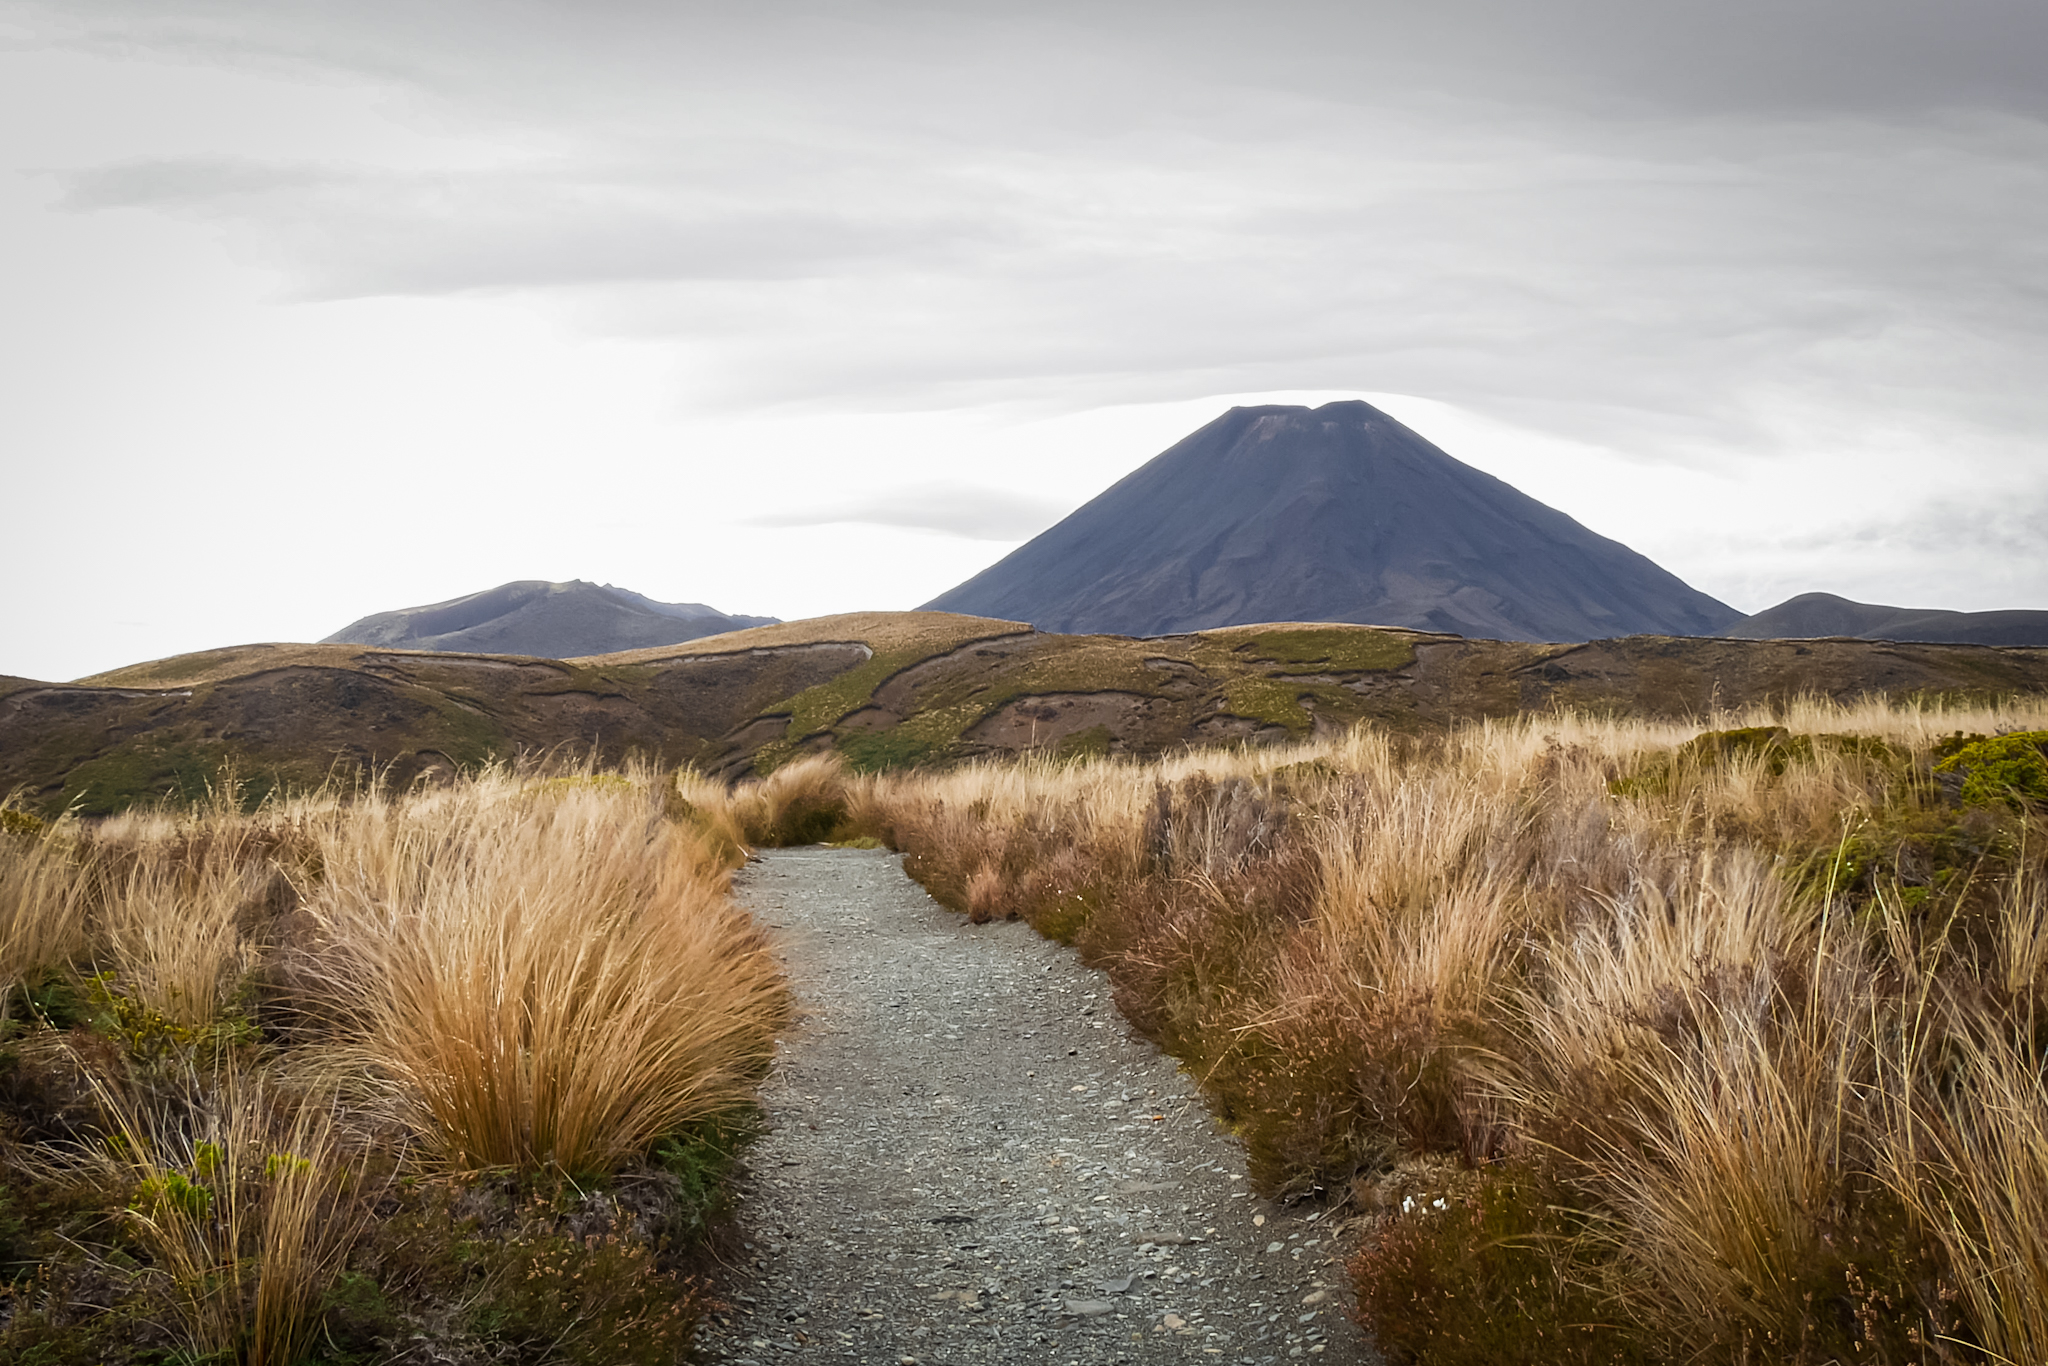 Parc National de Tongariro sur l'île du Nord, Nouvelle-Zélande © Claire Blumenfeld